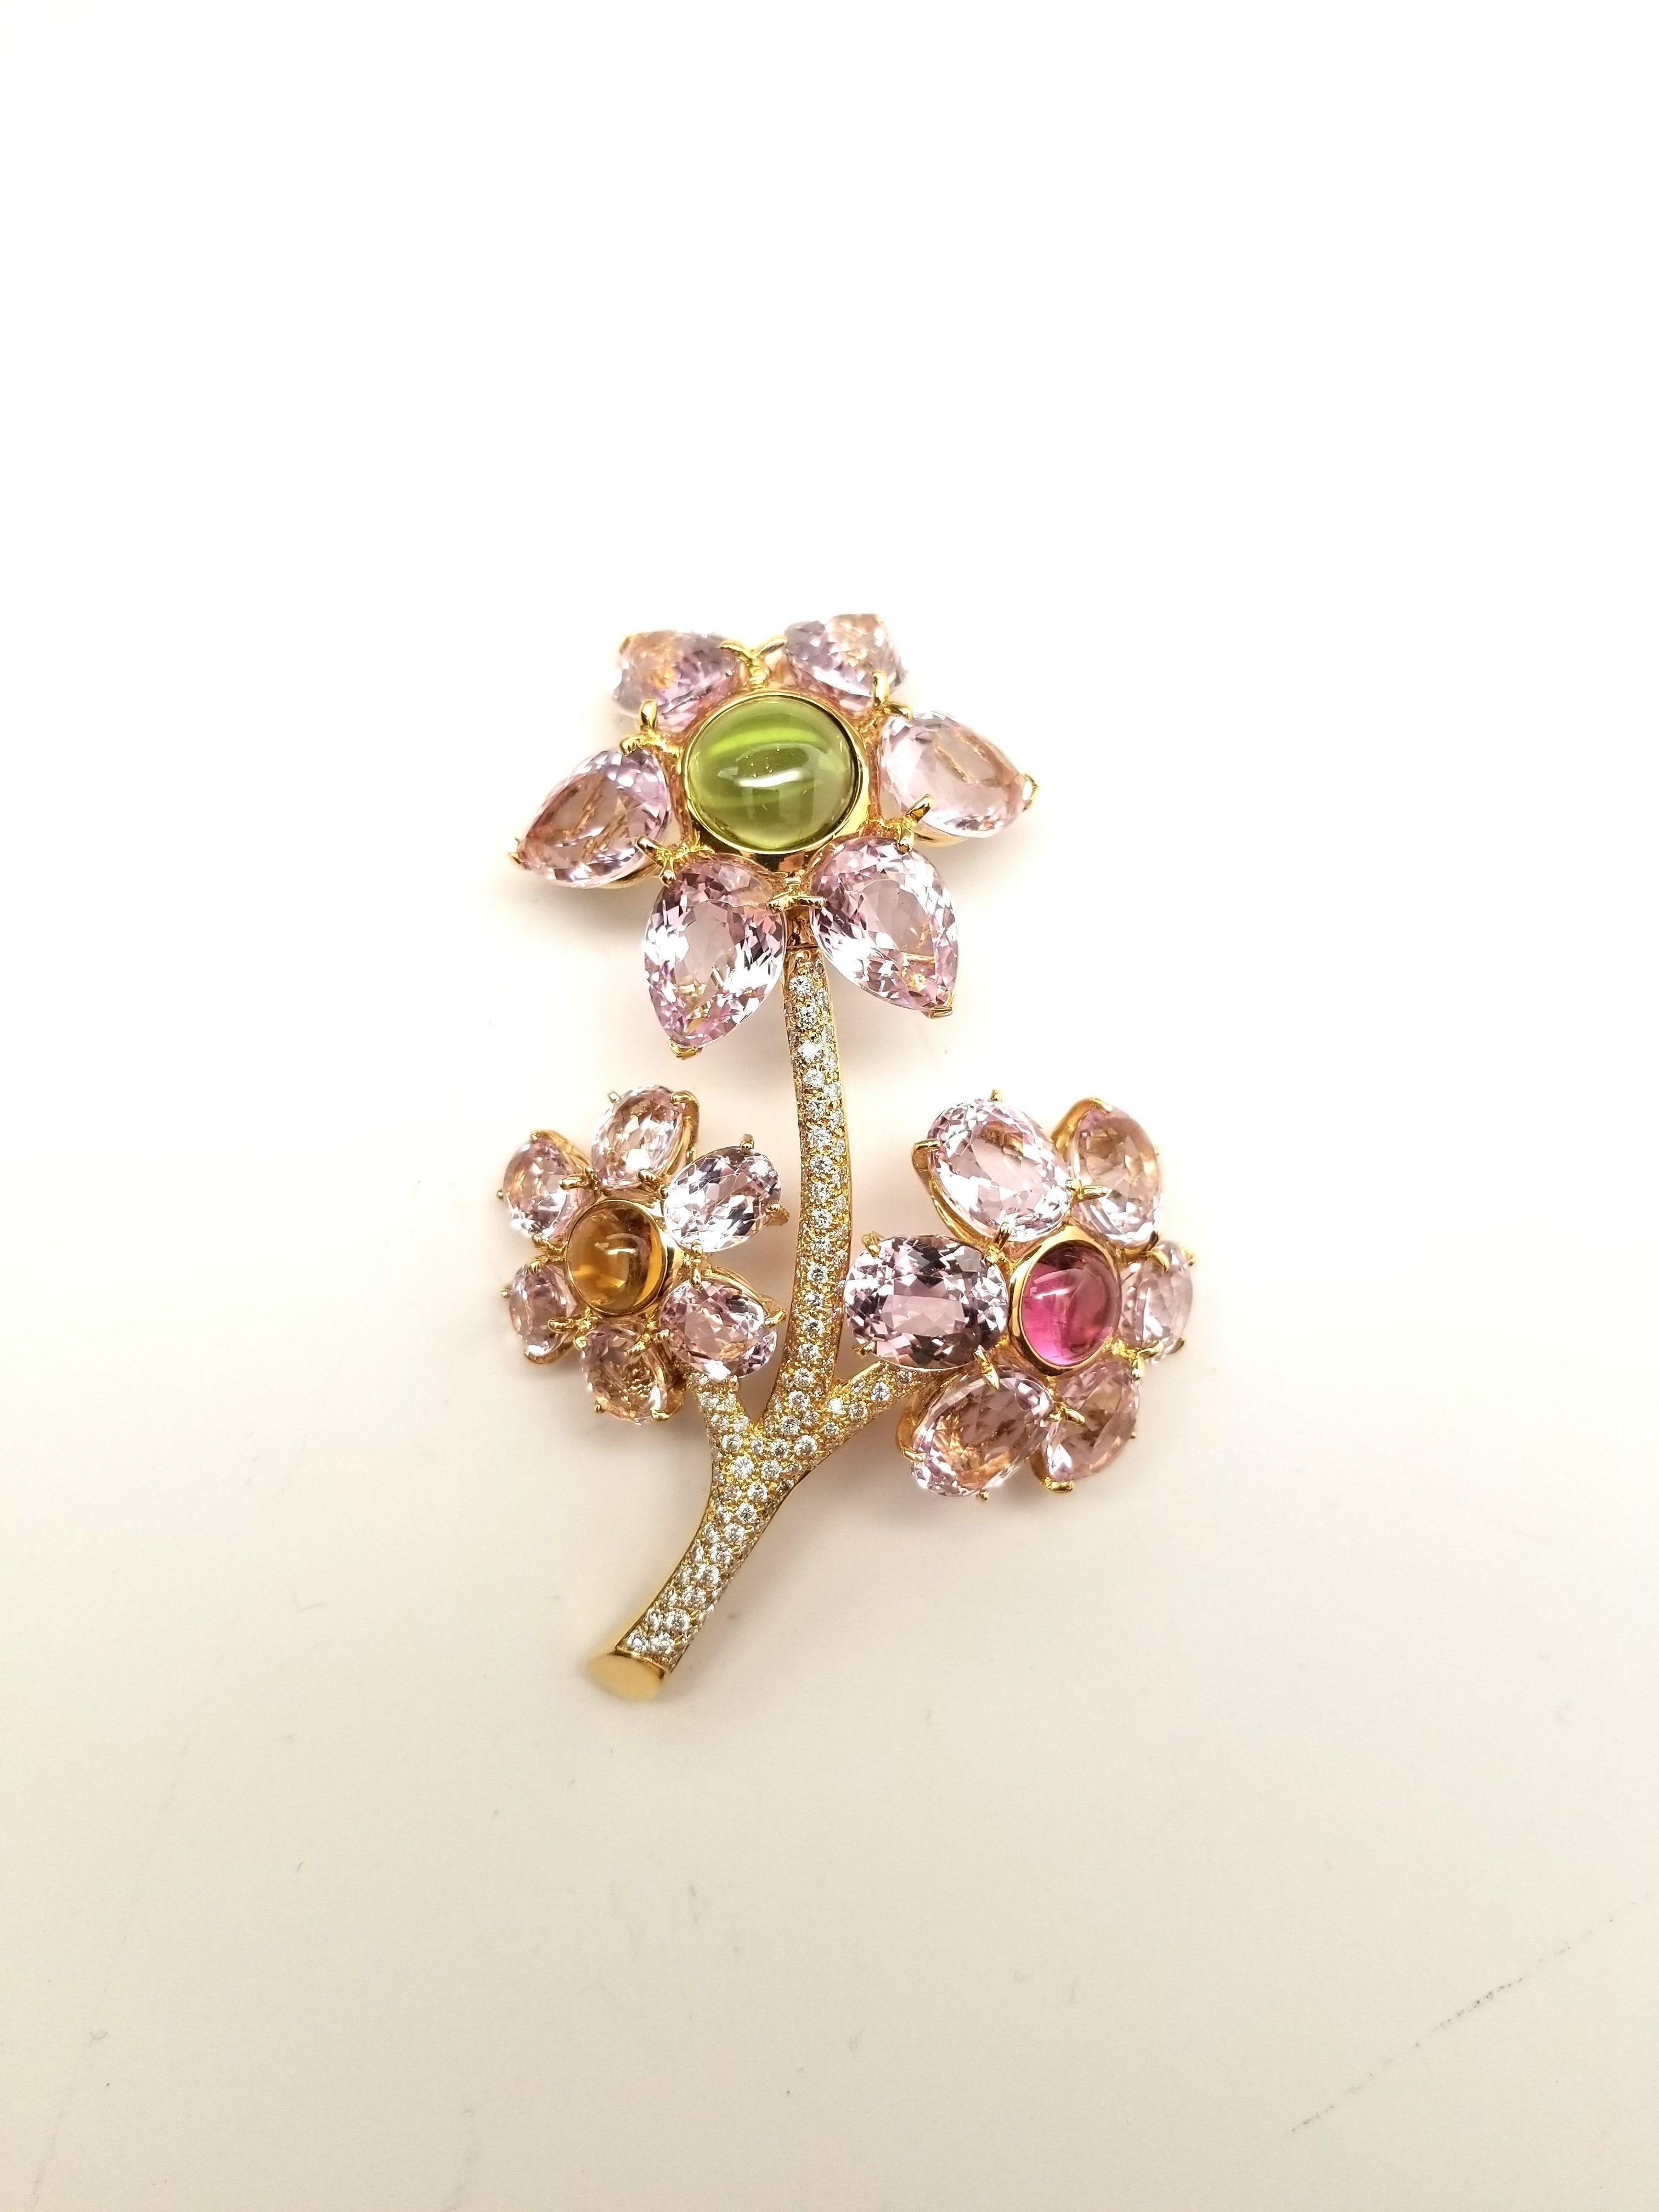 NEW GAL CERT Kunzite Tourmaline Diamond Flower Brooch 18K Gold LFPARIS Mark For Sale 2